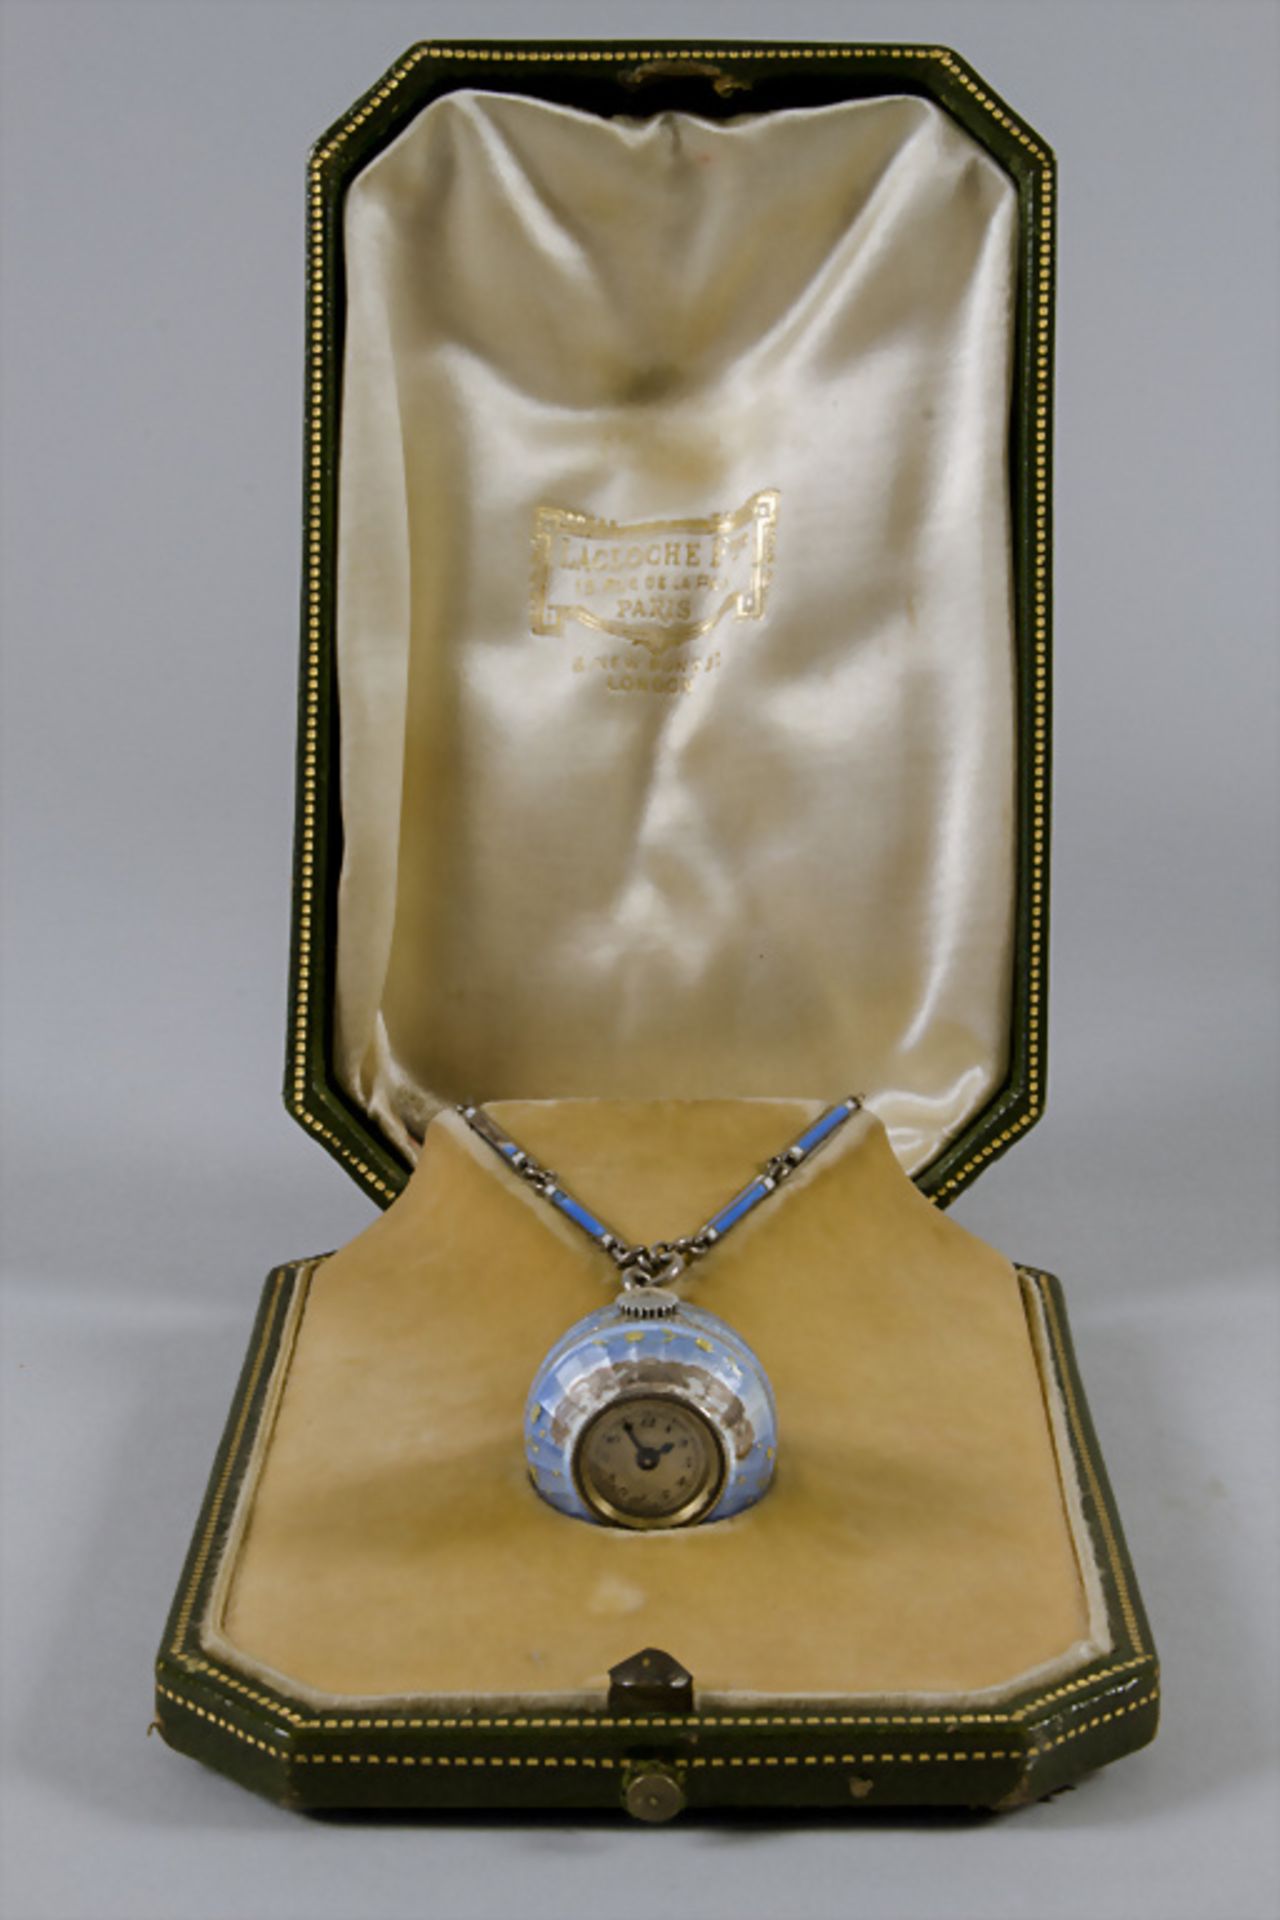 Uhrenanhänger 'Genfer Ei' / A watch pendant 'Boulle de Geneve', Lacloche Frères, Paris, ab 1912 - Bild 5 aus 5